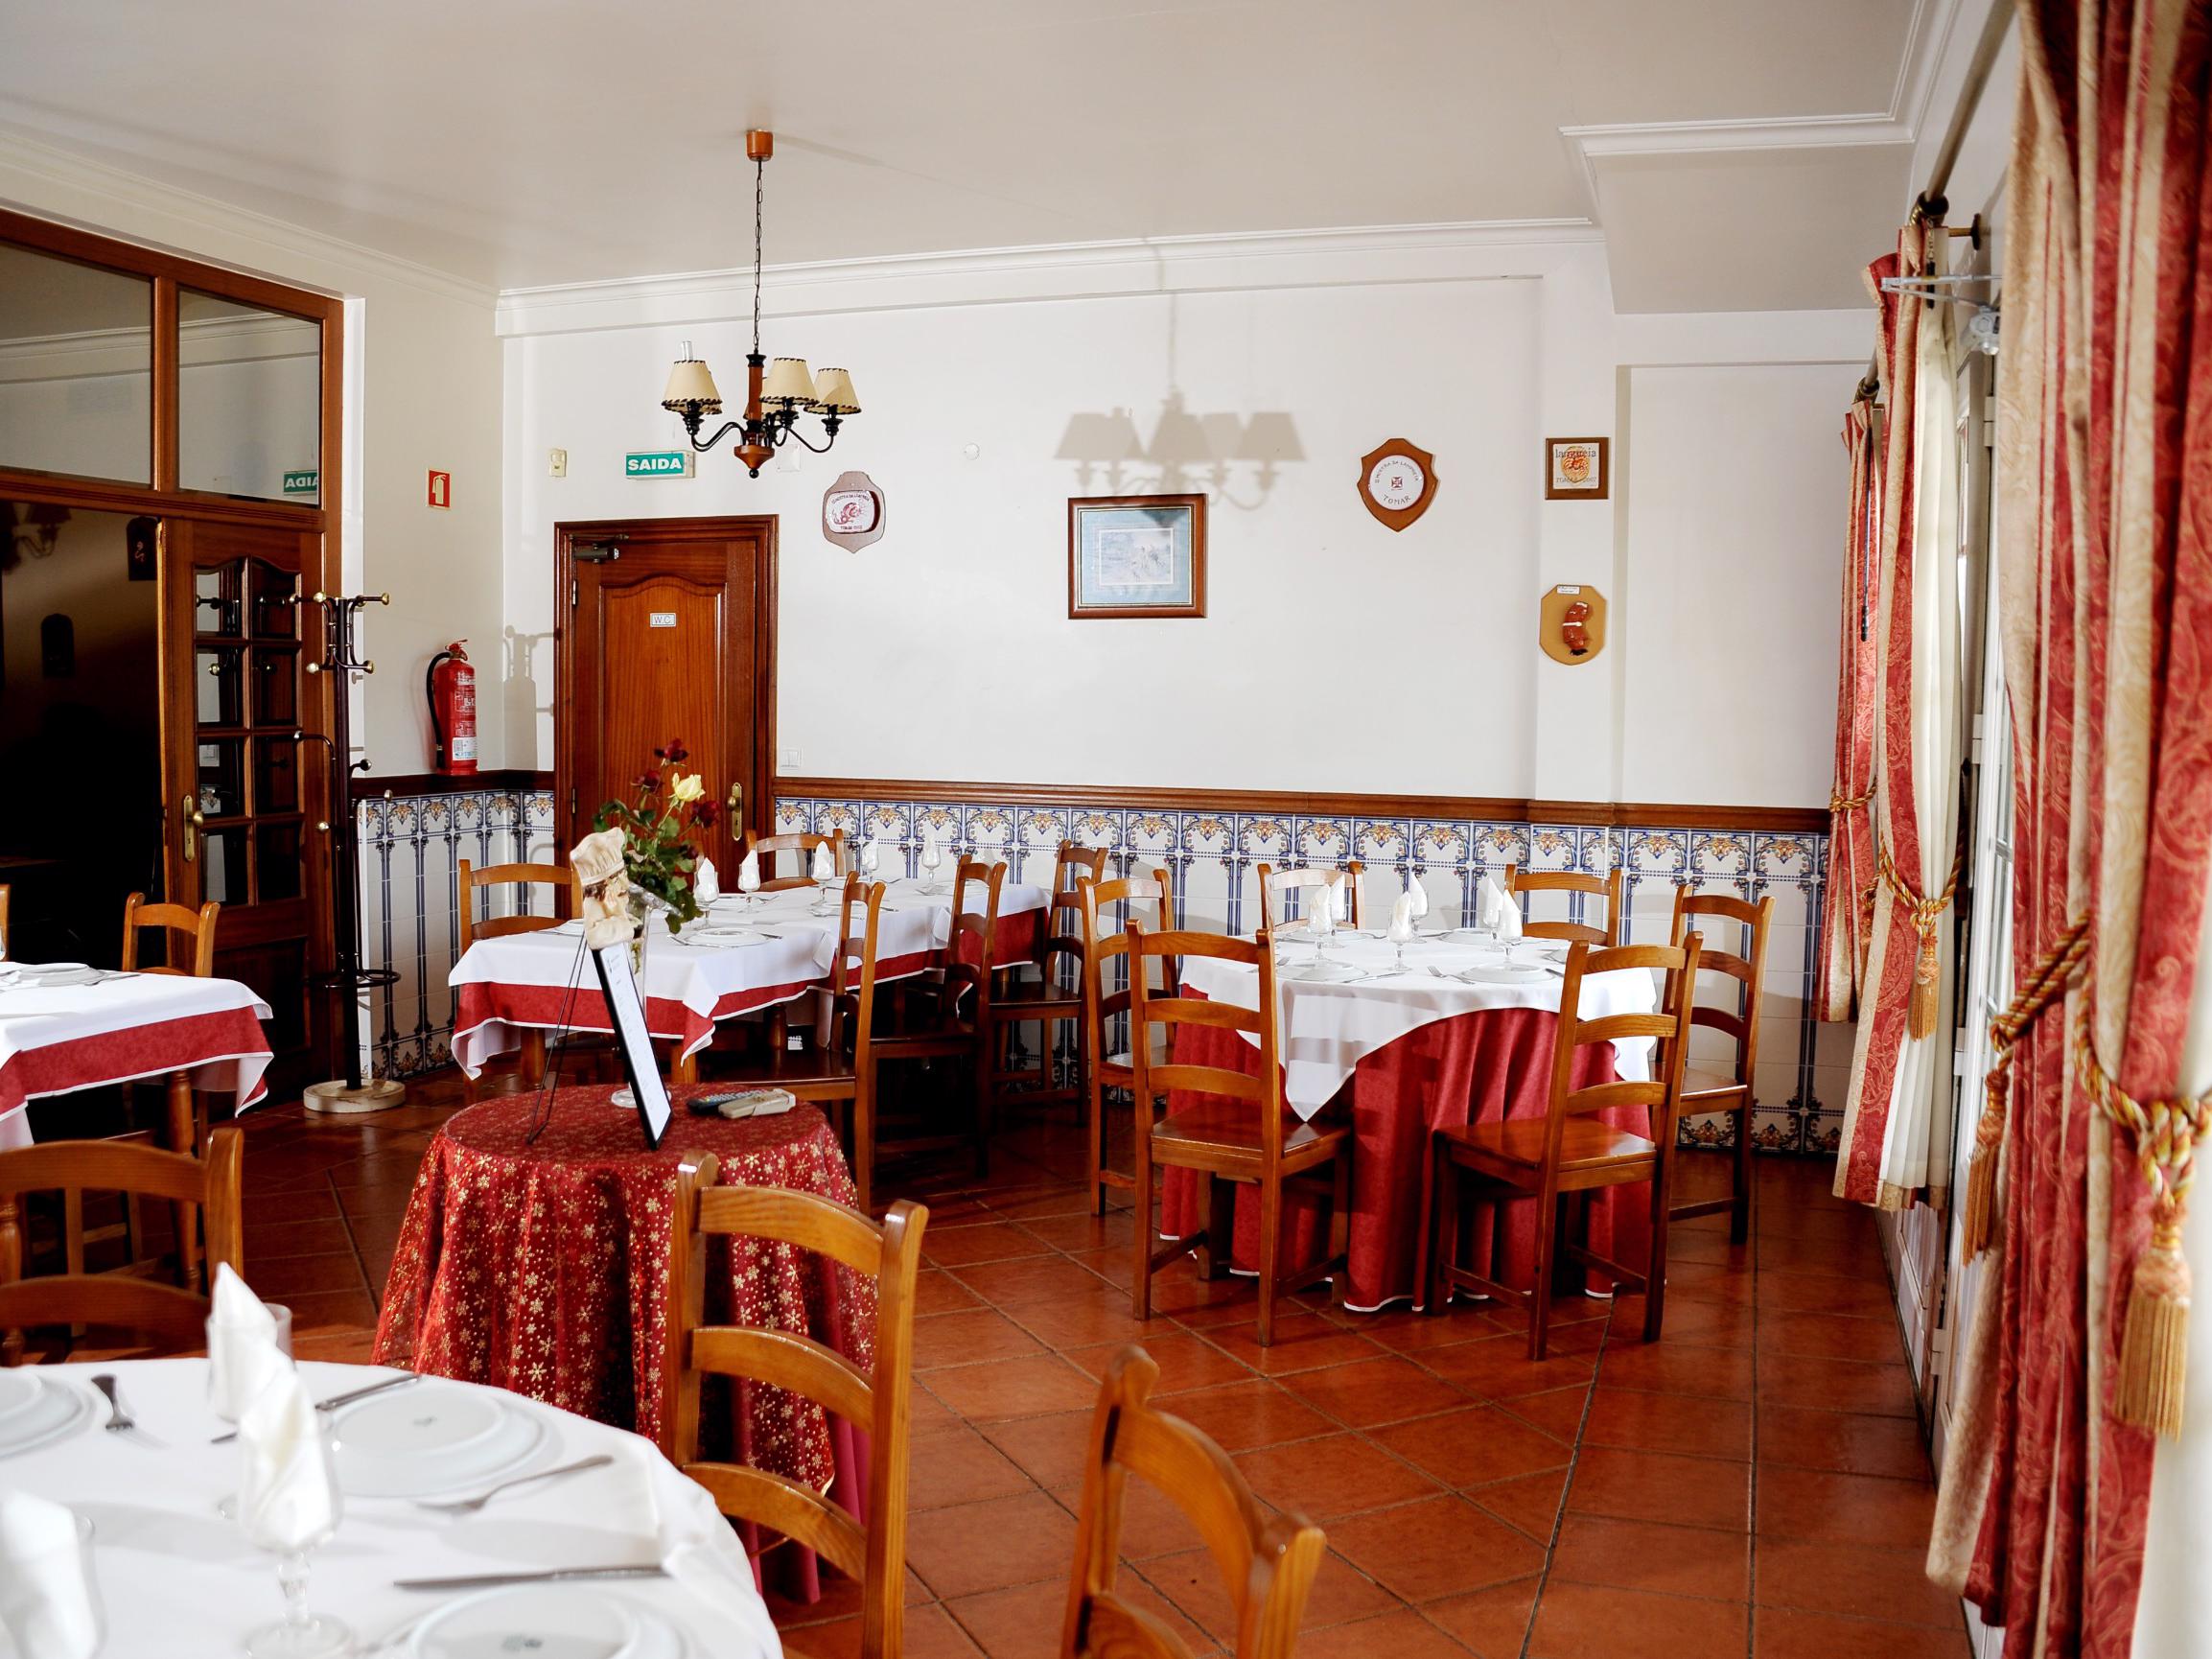 Refeição - O Restaurante Ninho do Falcão fica localizado entre Tomar e a Barragem do Castelo de Bode, servindo comida tradicional tendo  uma sala climatizada com ocupação máxima de 80 lugares. 